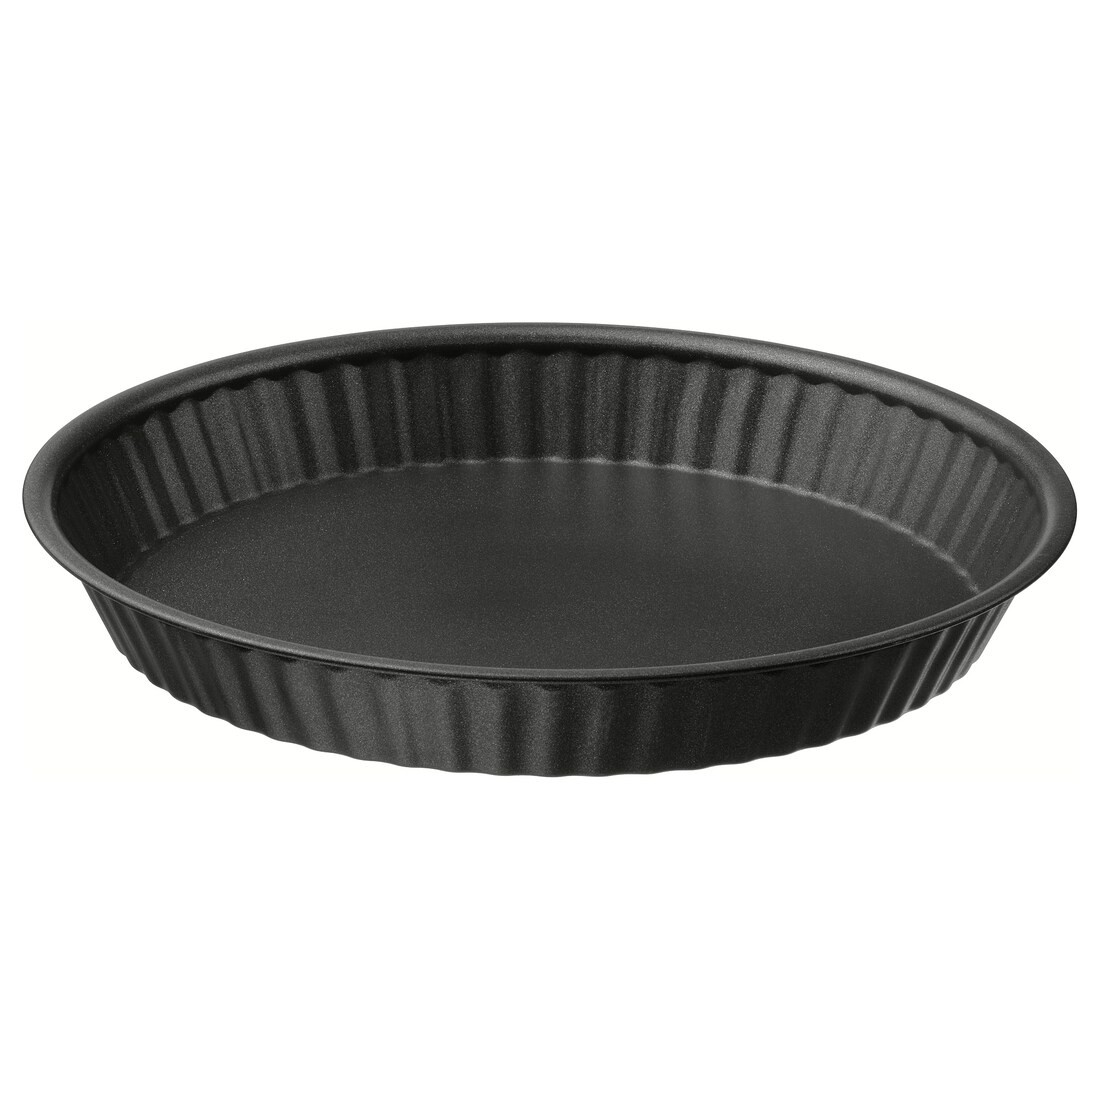 MÅNTAGG Форма для випічки, антипригарне покриття темно-сірого кольору, 30 см